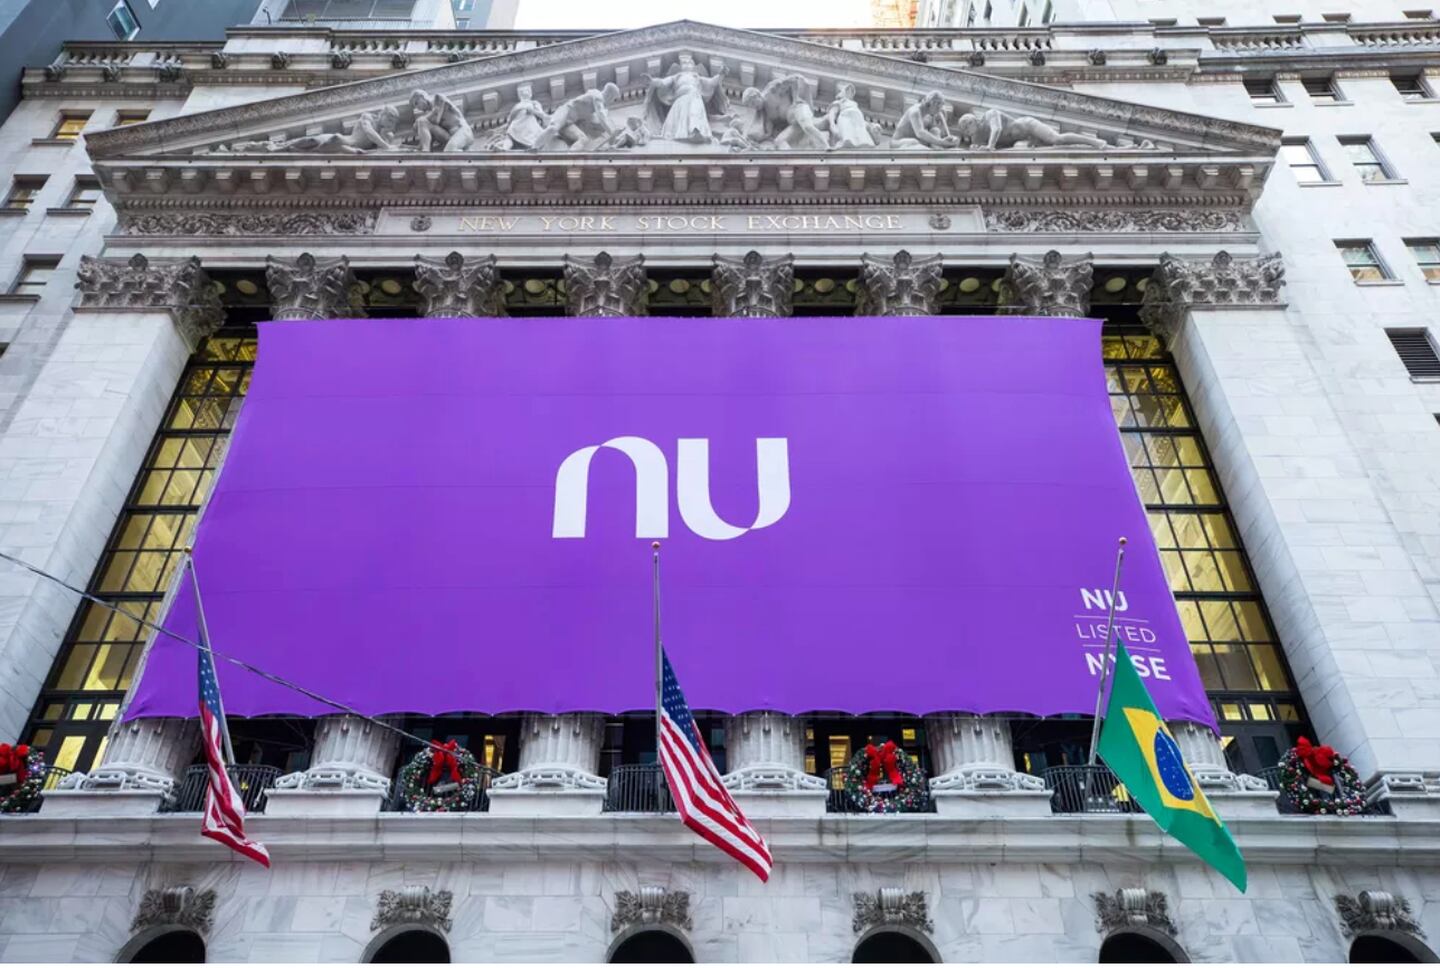 Nubank's debut at NYSE